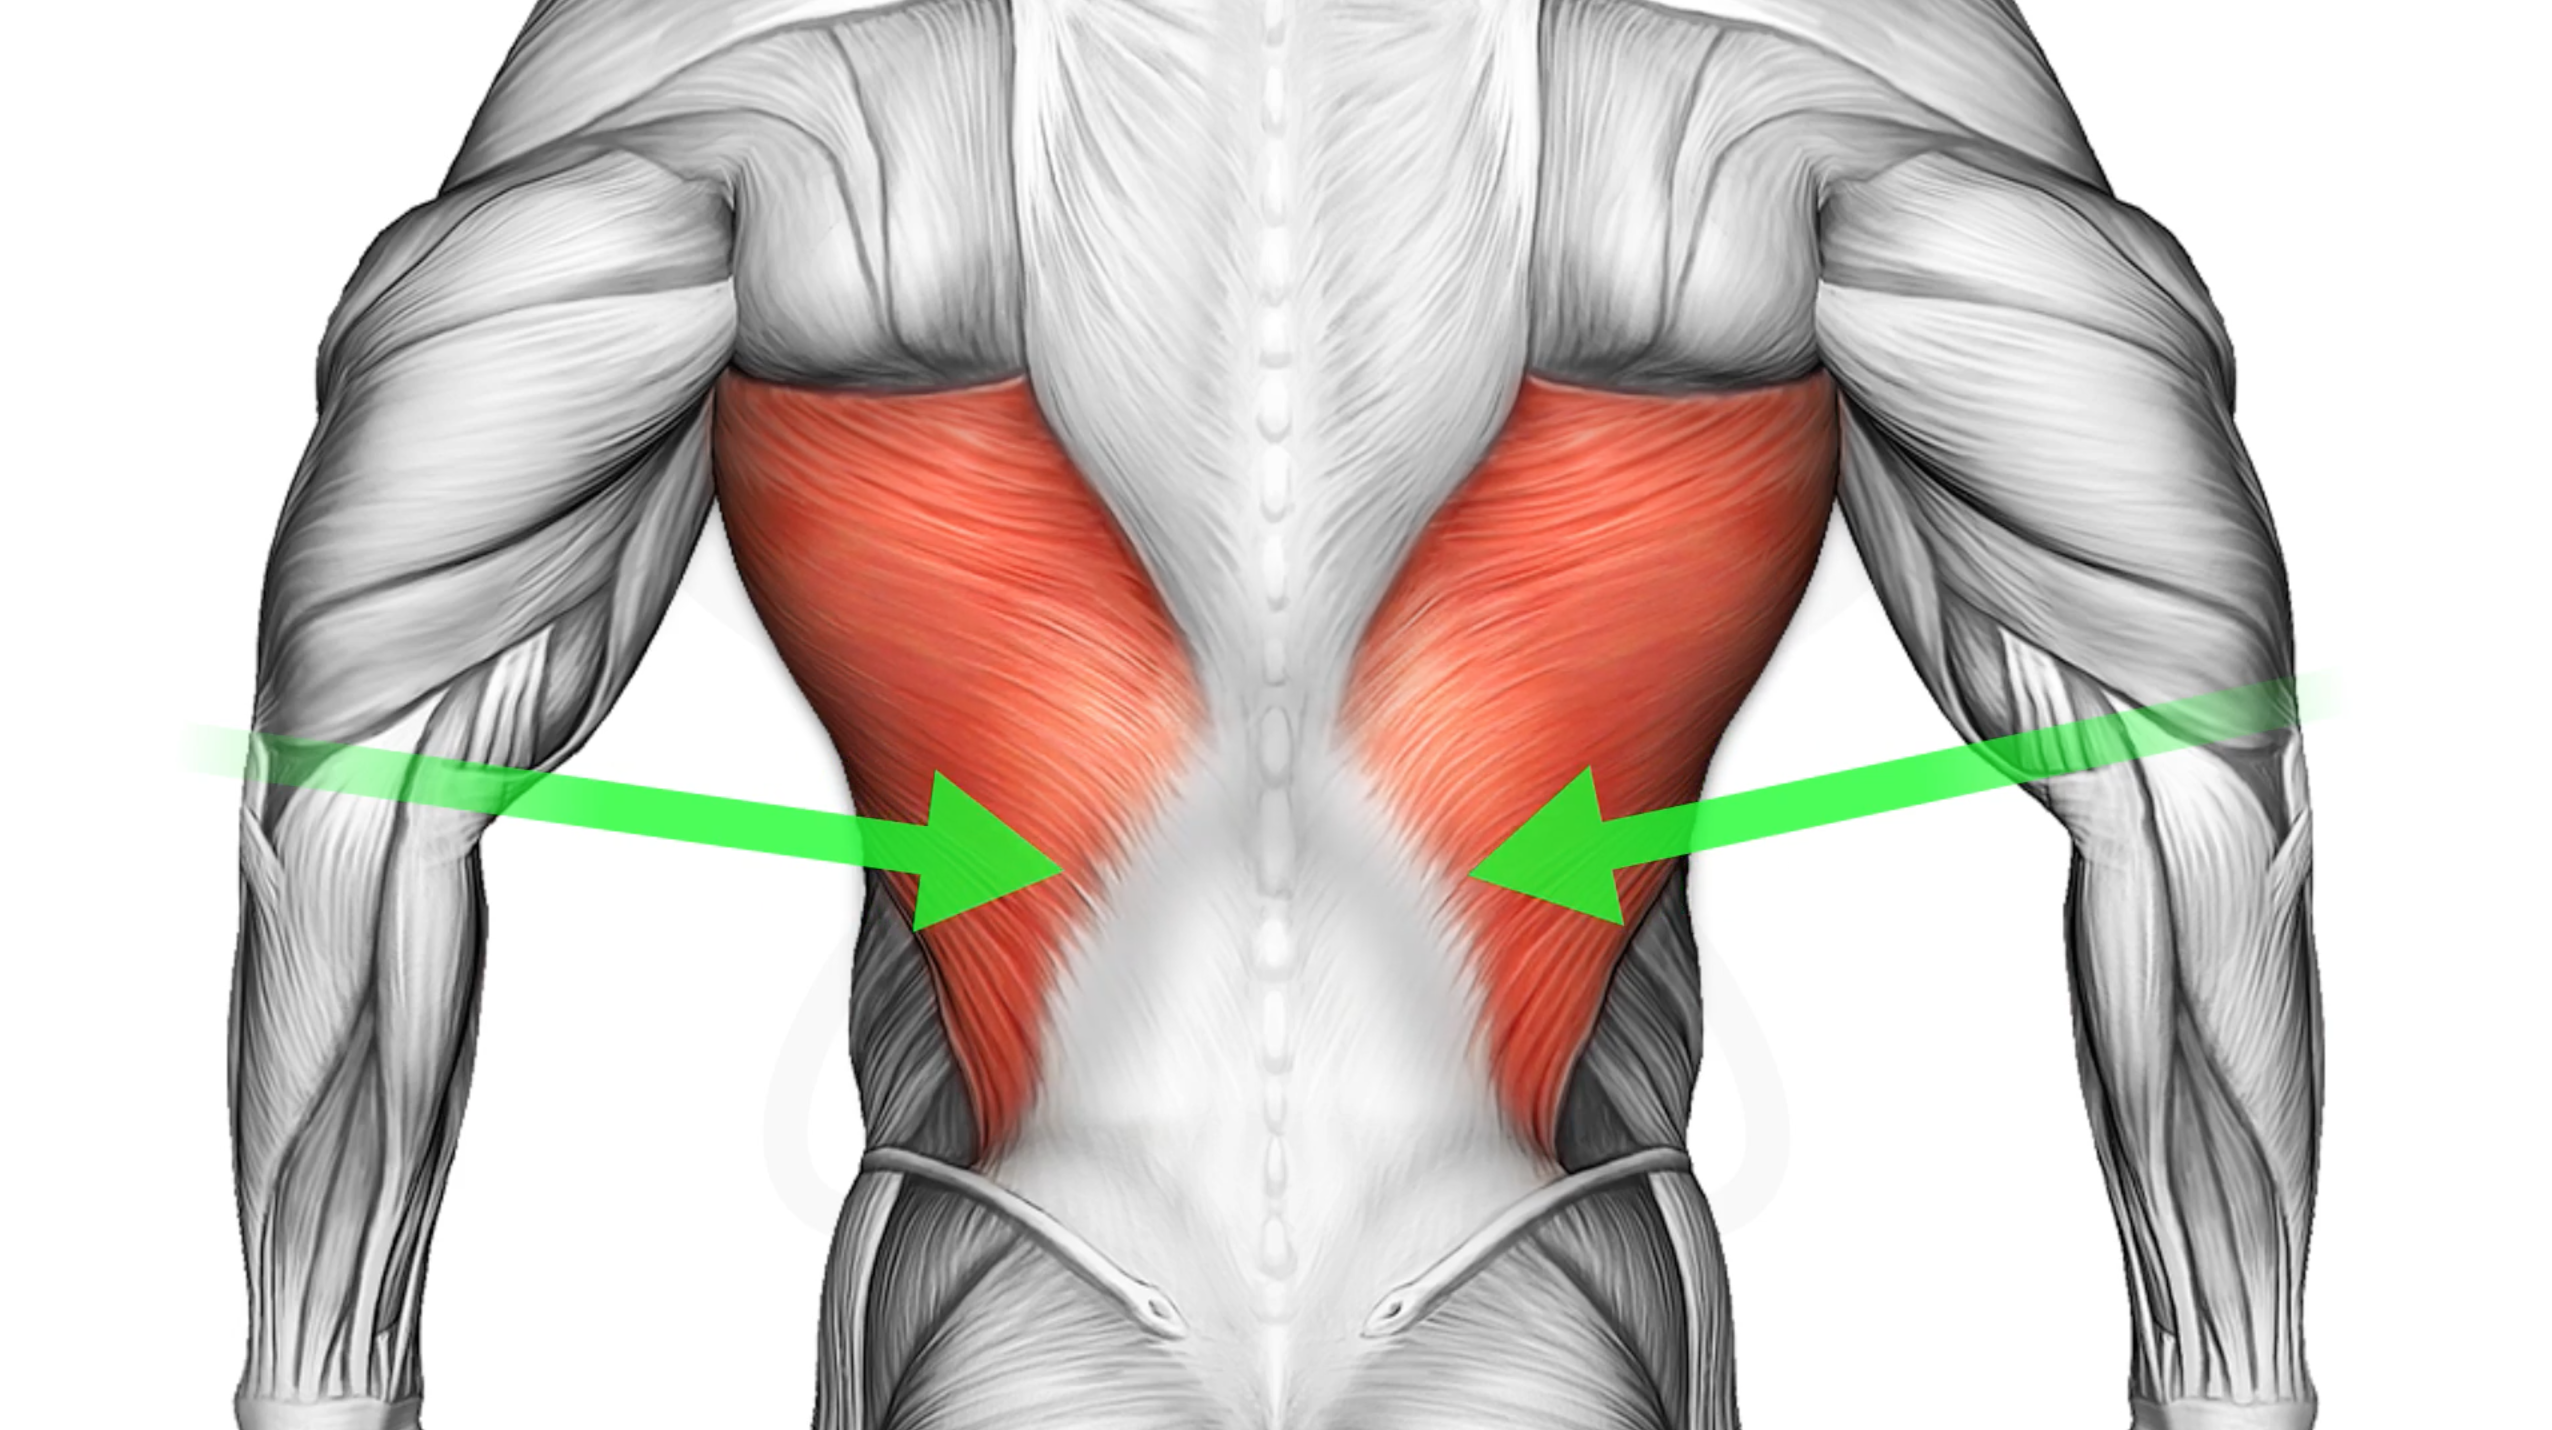 Широчайшая мышца спины спереди. Апоневроз широчайшей мышцы спины. Крылья мышцы спины спереди. Широчайшая мышца спины вид сбоку.